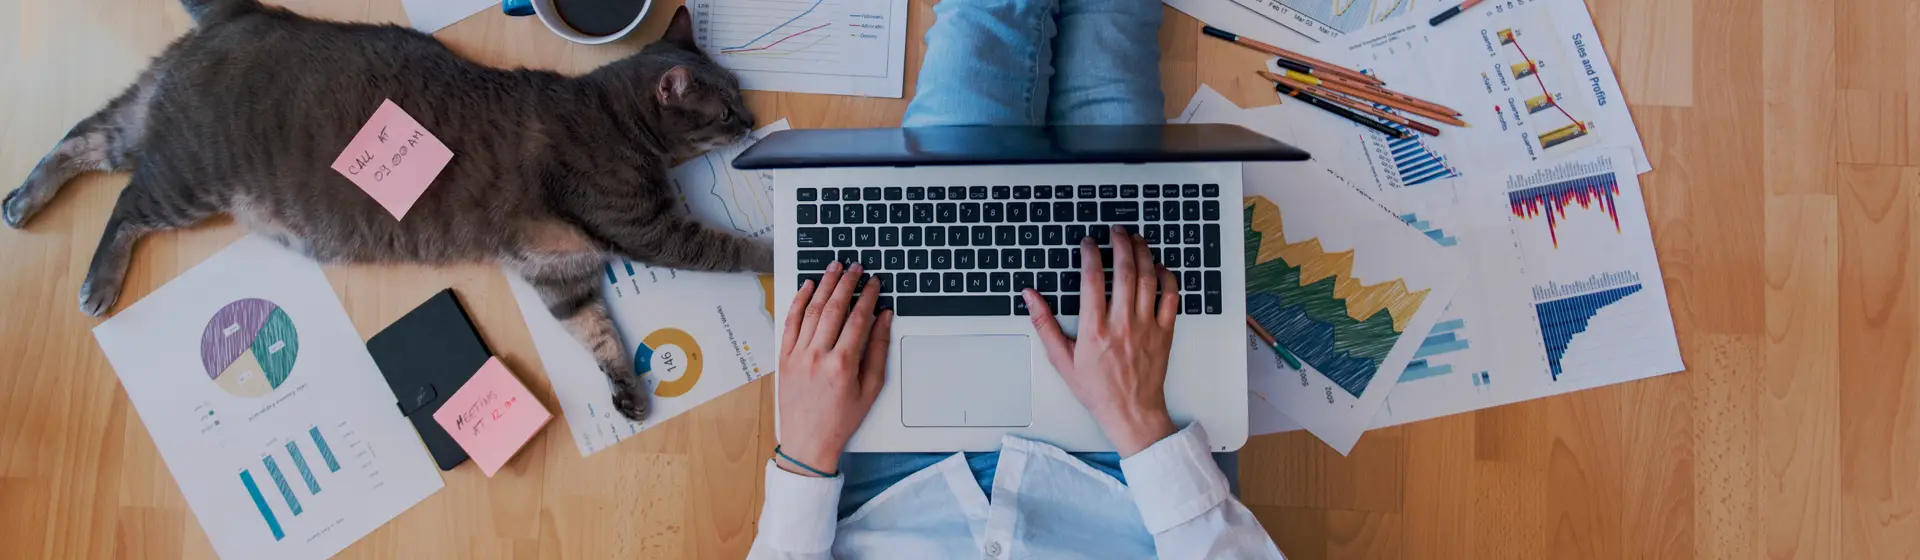 Pessoa usando notebook para trabalho sentada no chão com papéis e um gato